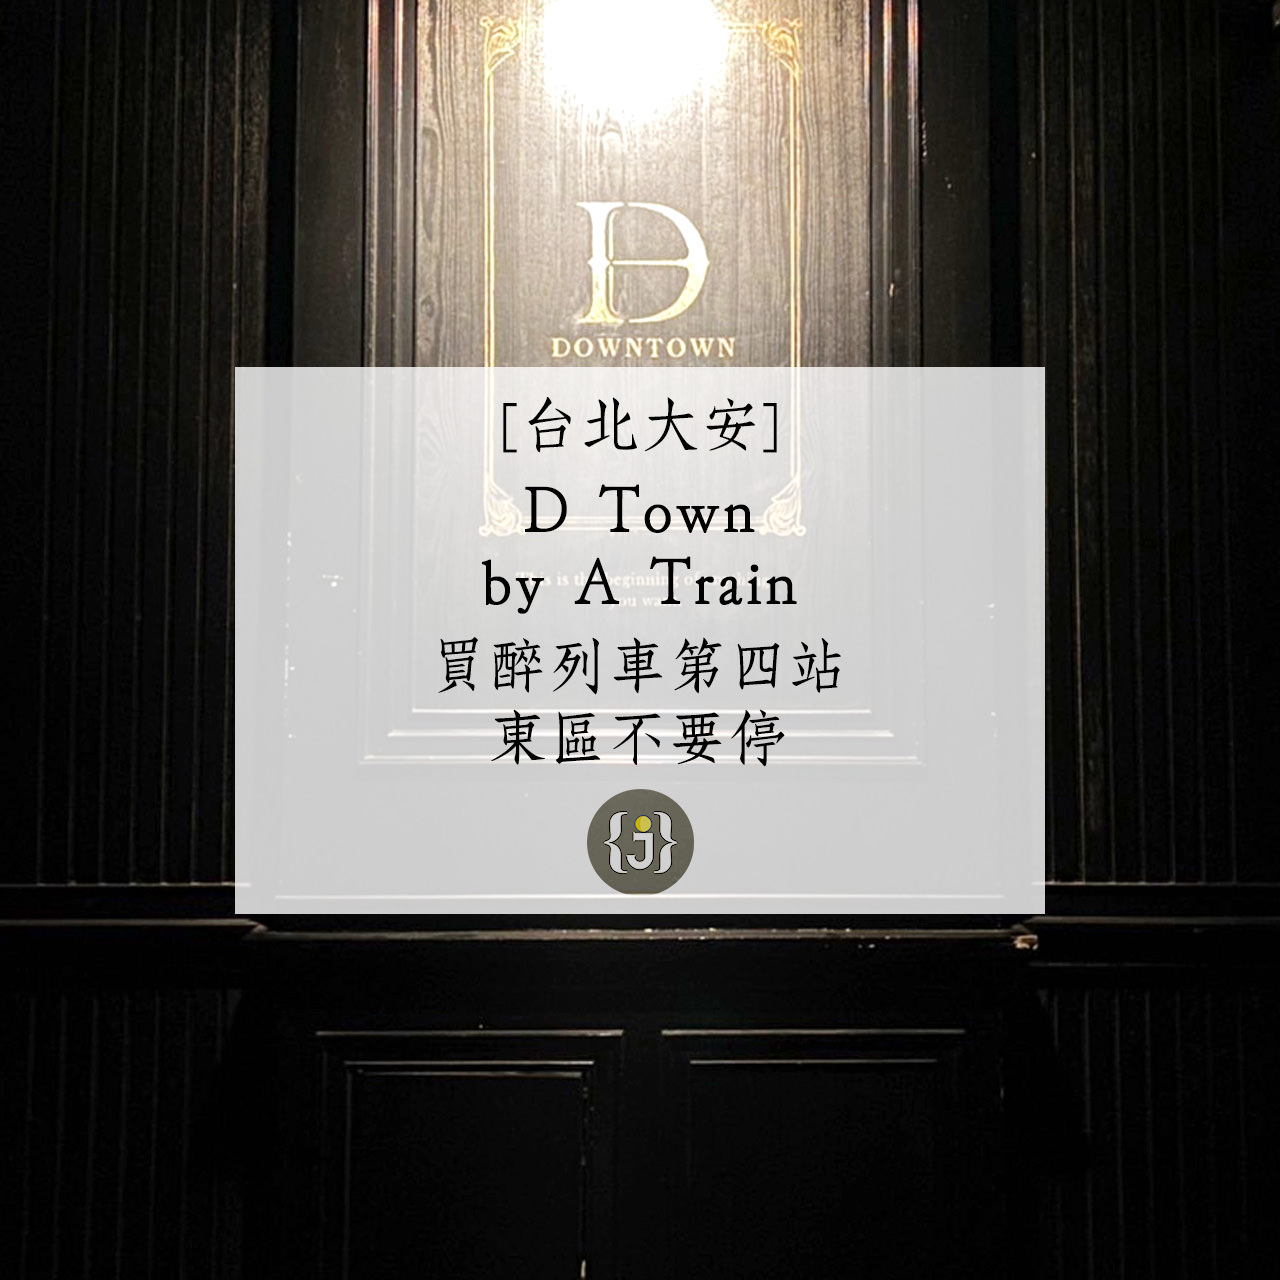 【台北大安】D Town by A Train 買醉列車第四站 東區不要停